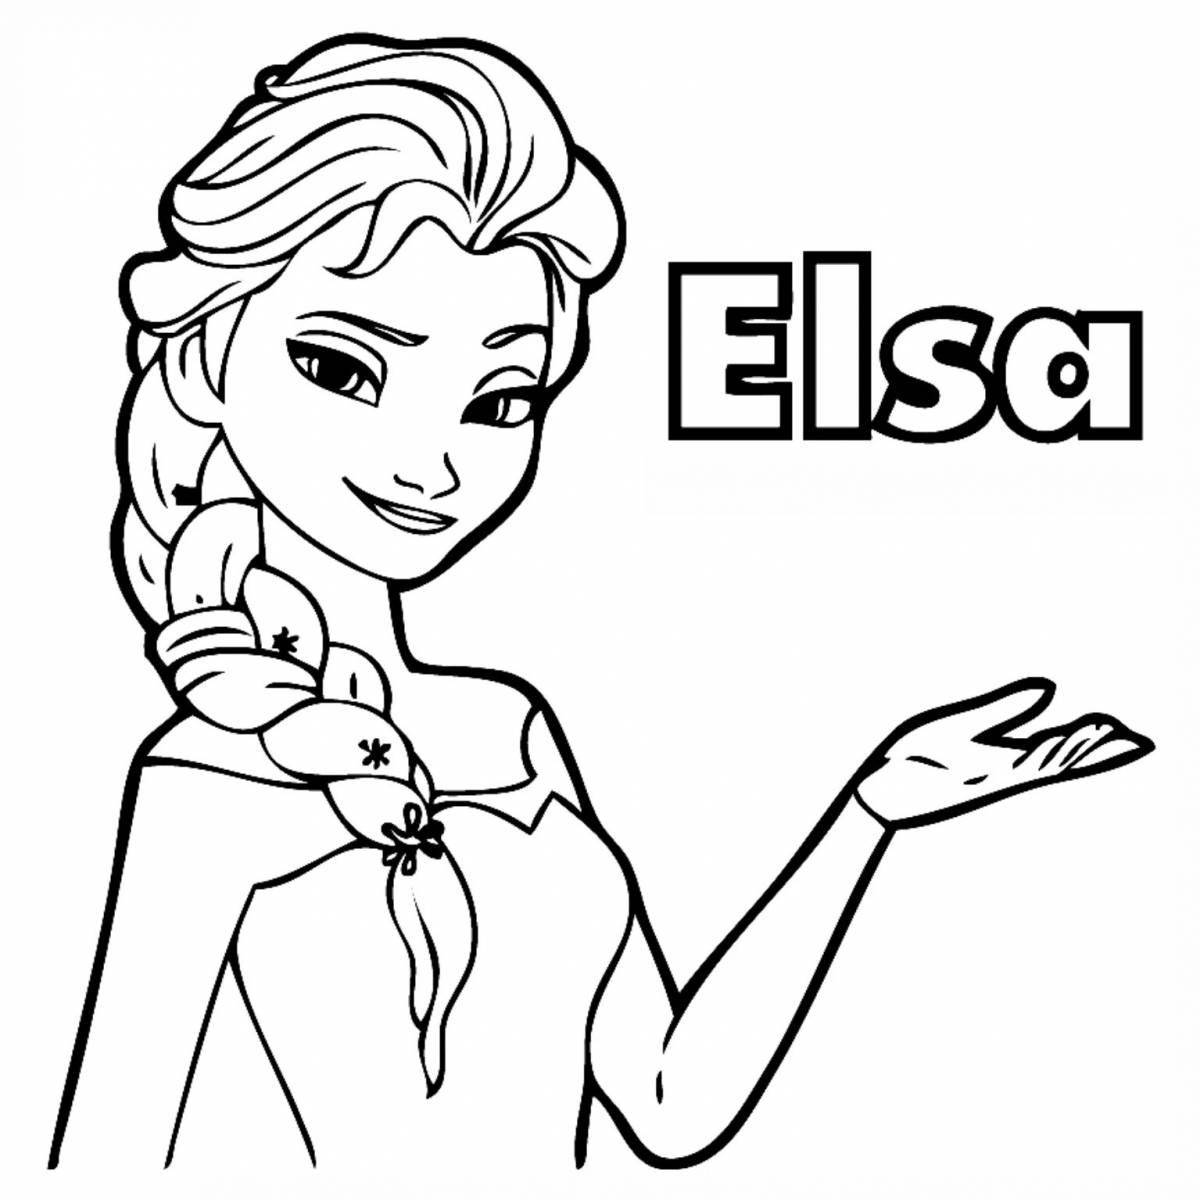 Elsa's exquisite coloring